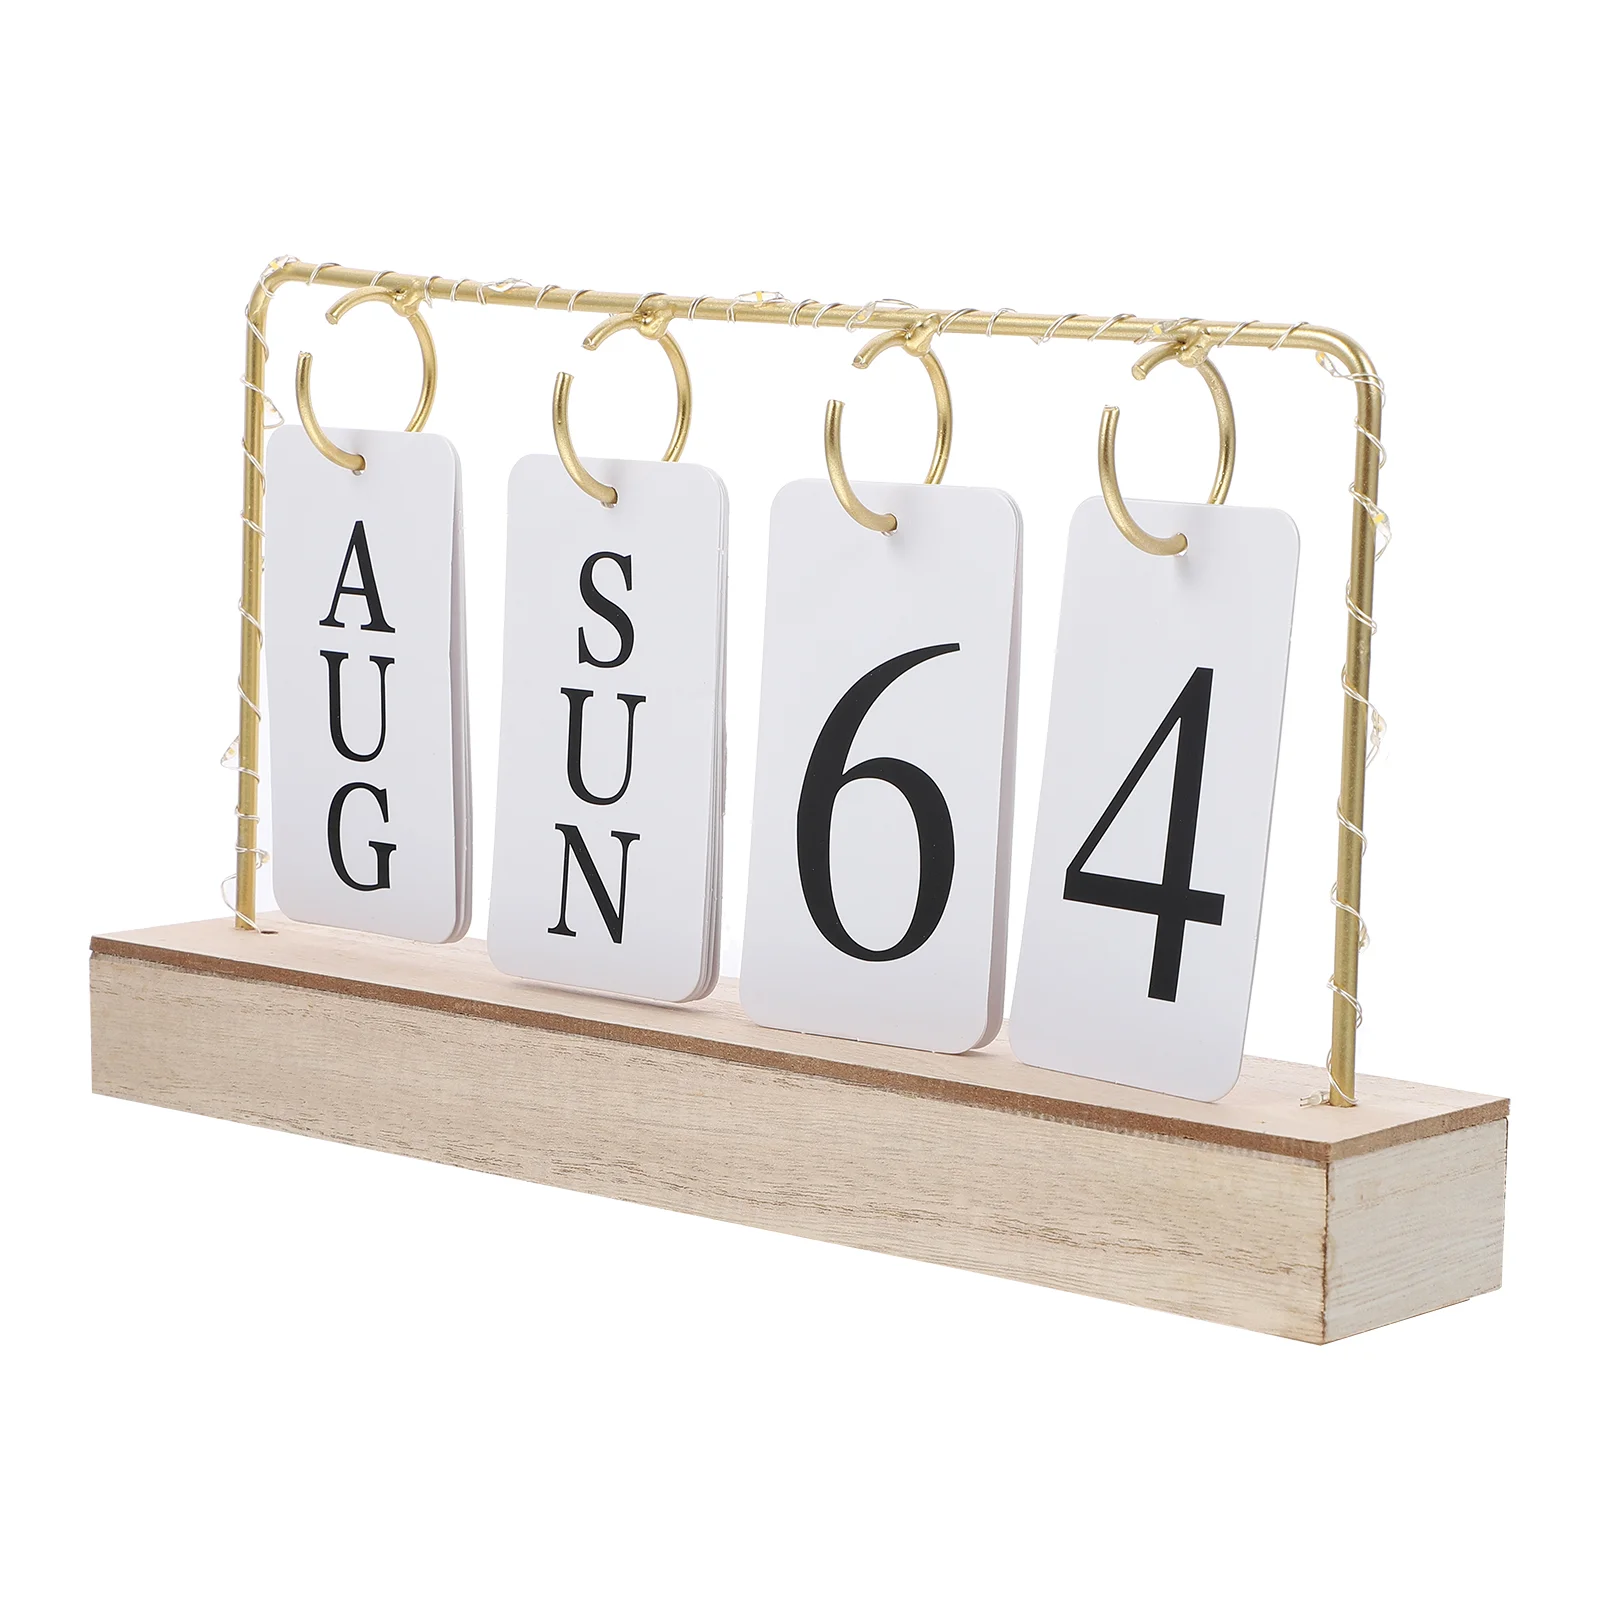  Винтажный деревянный вечный календарь Flip Month Date Display Со светодиодной подсветкой для офиса, украшения дома, фотографии, реквизита, Advent 0